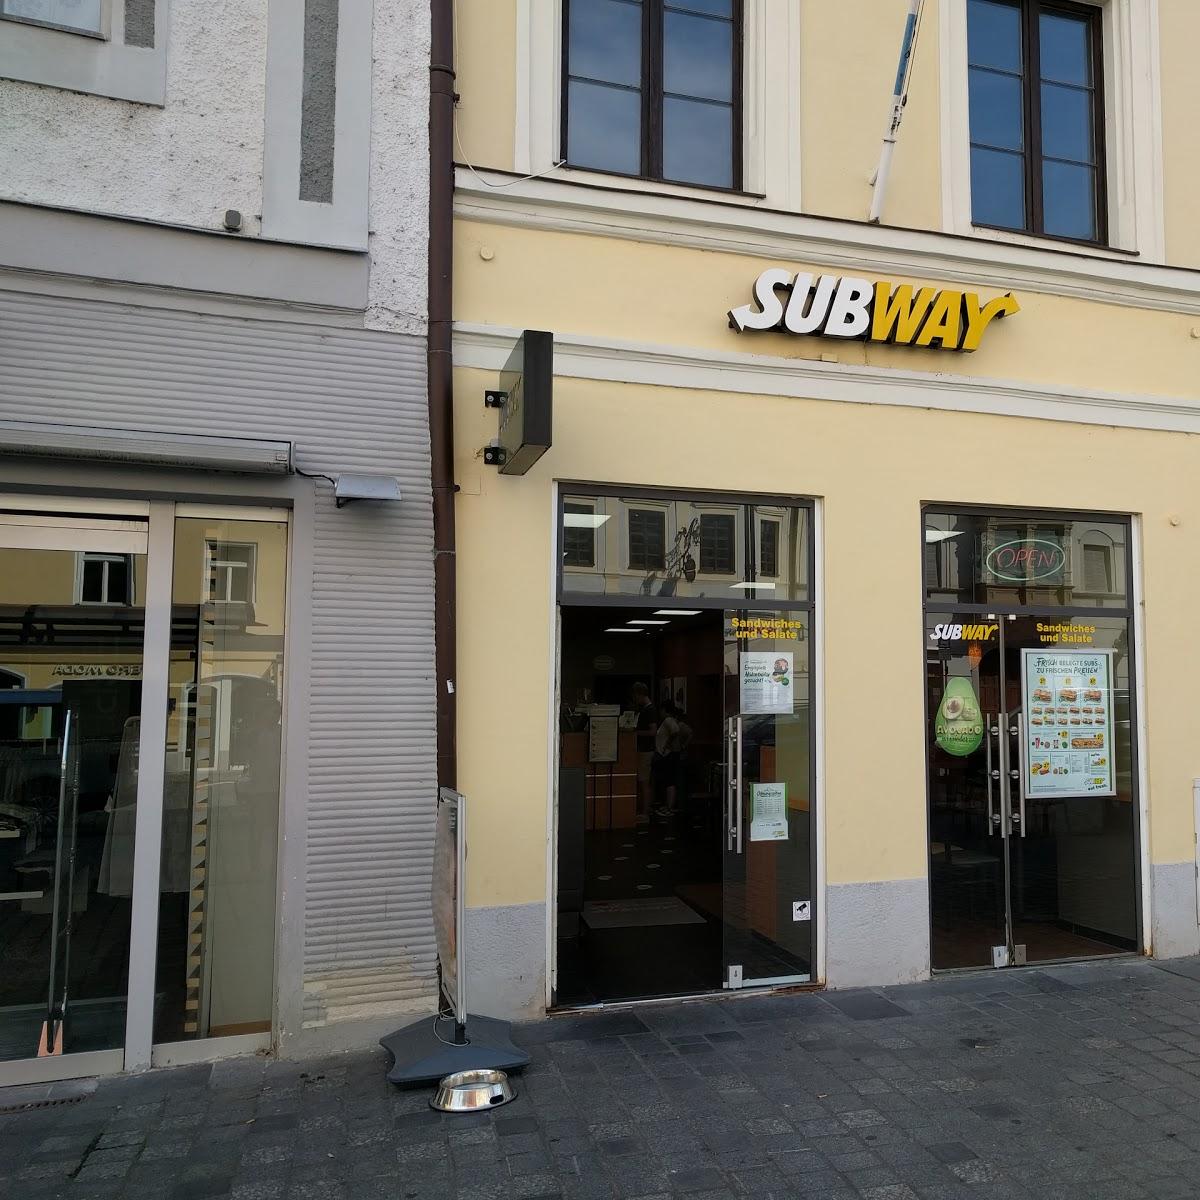 Restaurant "Subway" in  Straubing